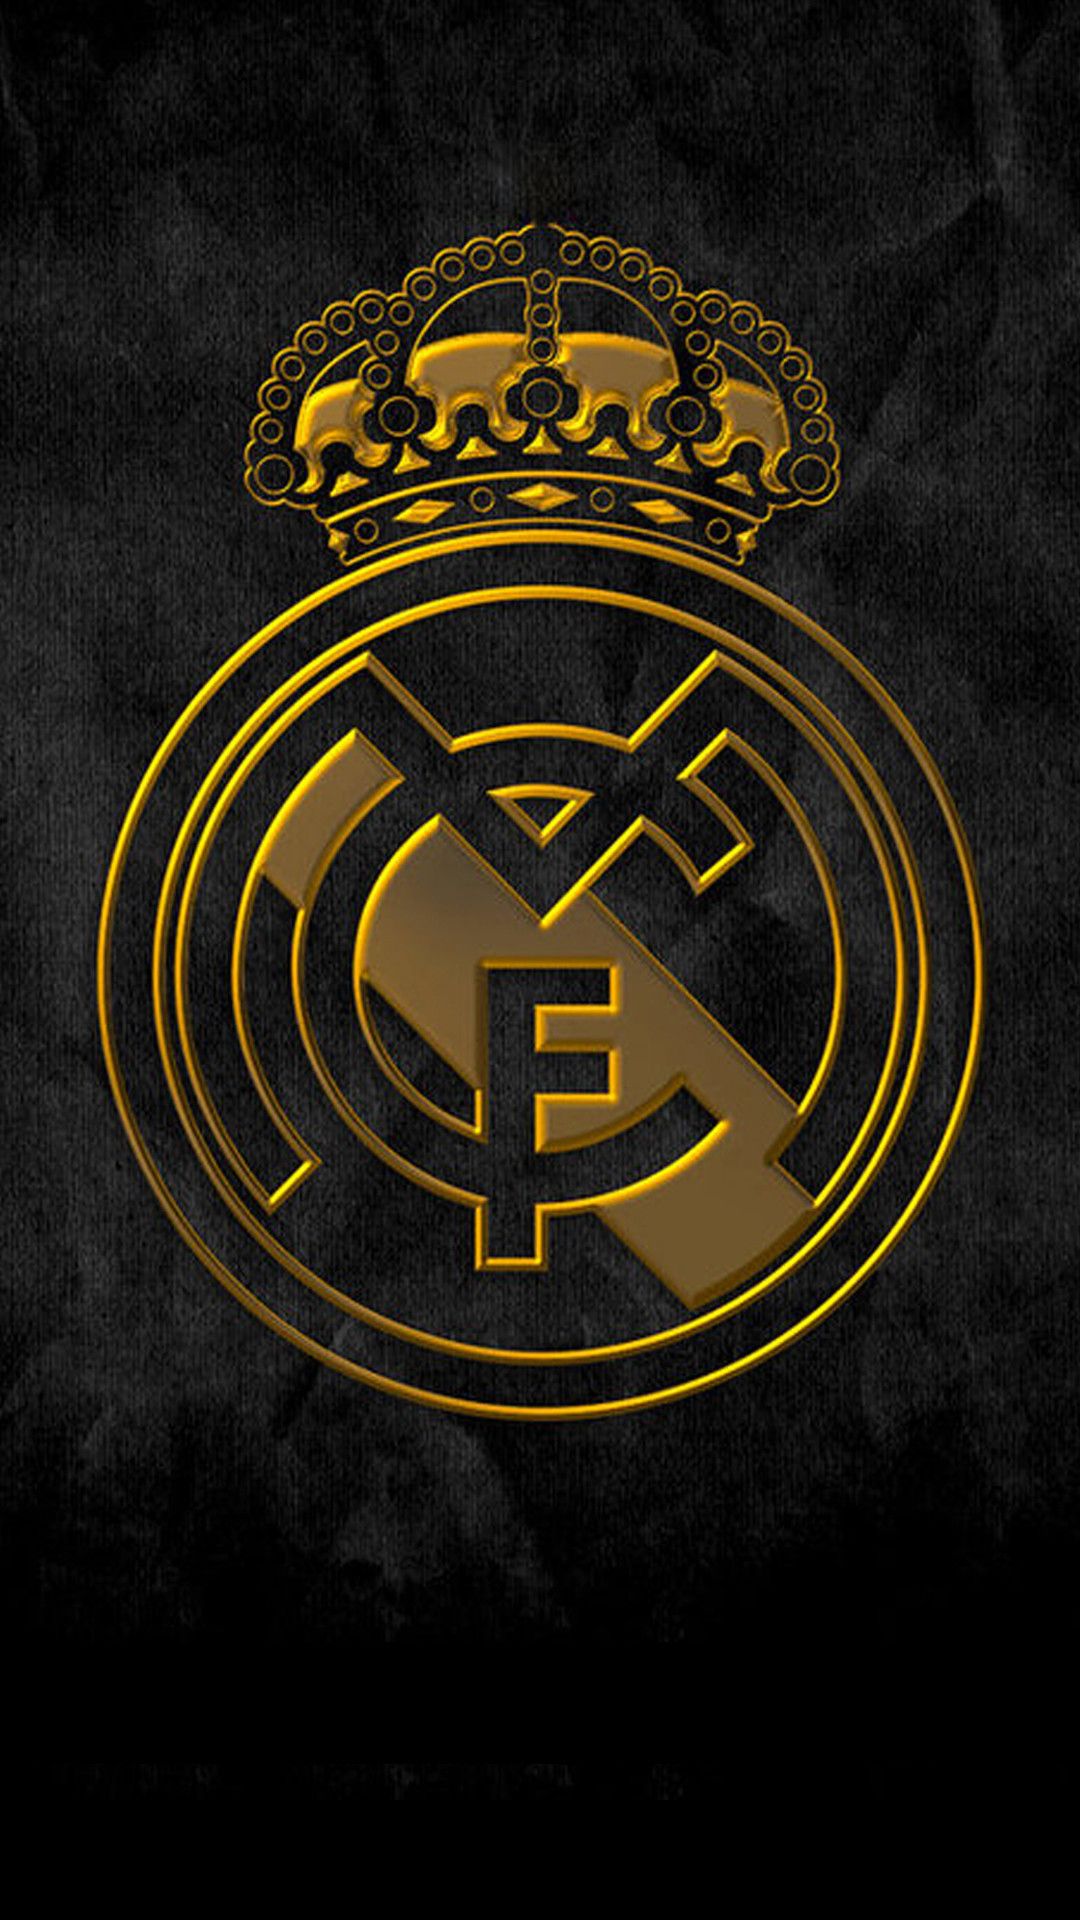 1080x1920 Обои для телефона Реала Мадрида Лиги чемпионов в 2020 году | Обои Мадрид Обои Реал Мадрид Логотип Реал Мадрид 